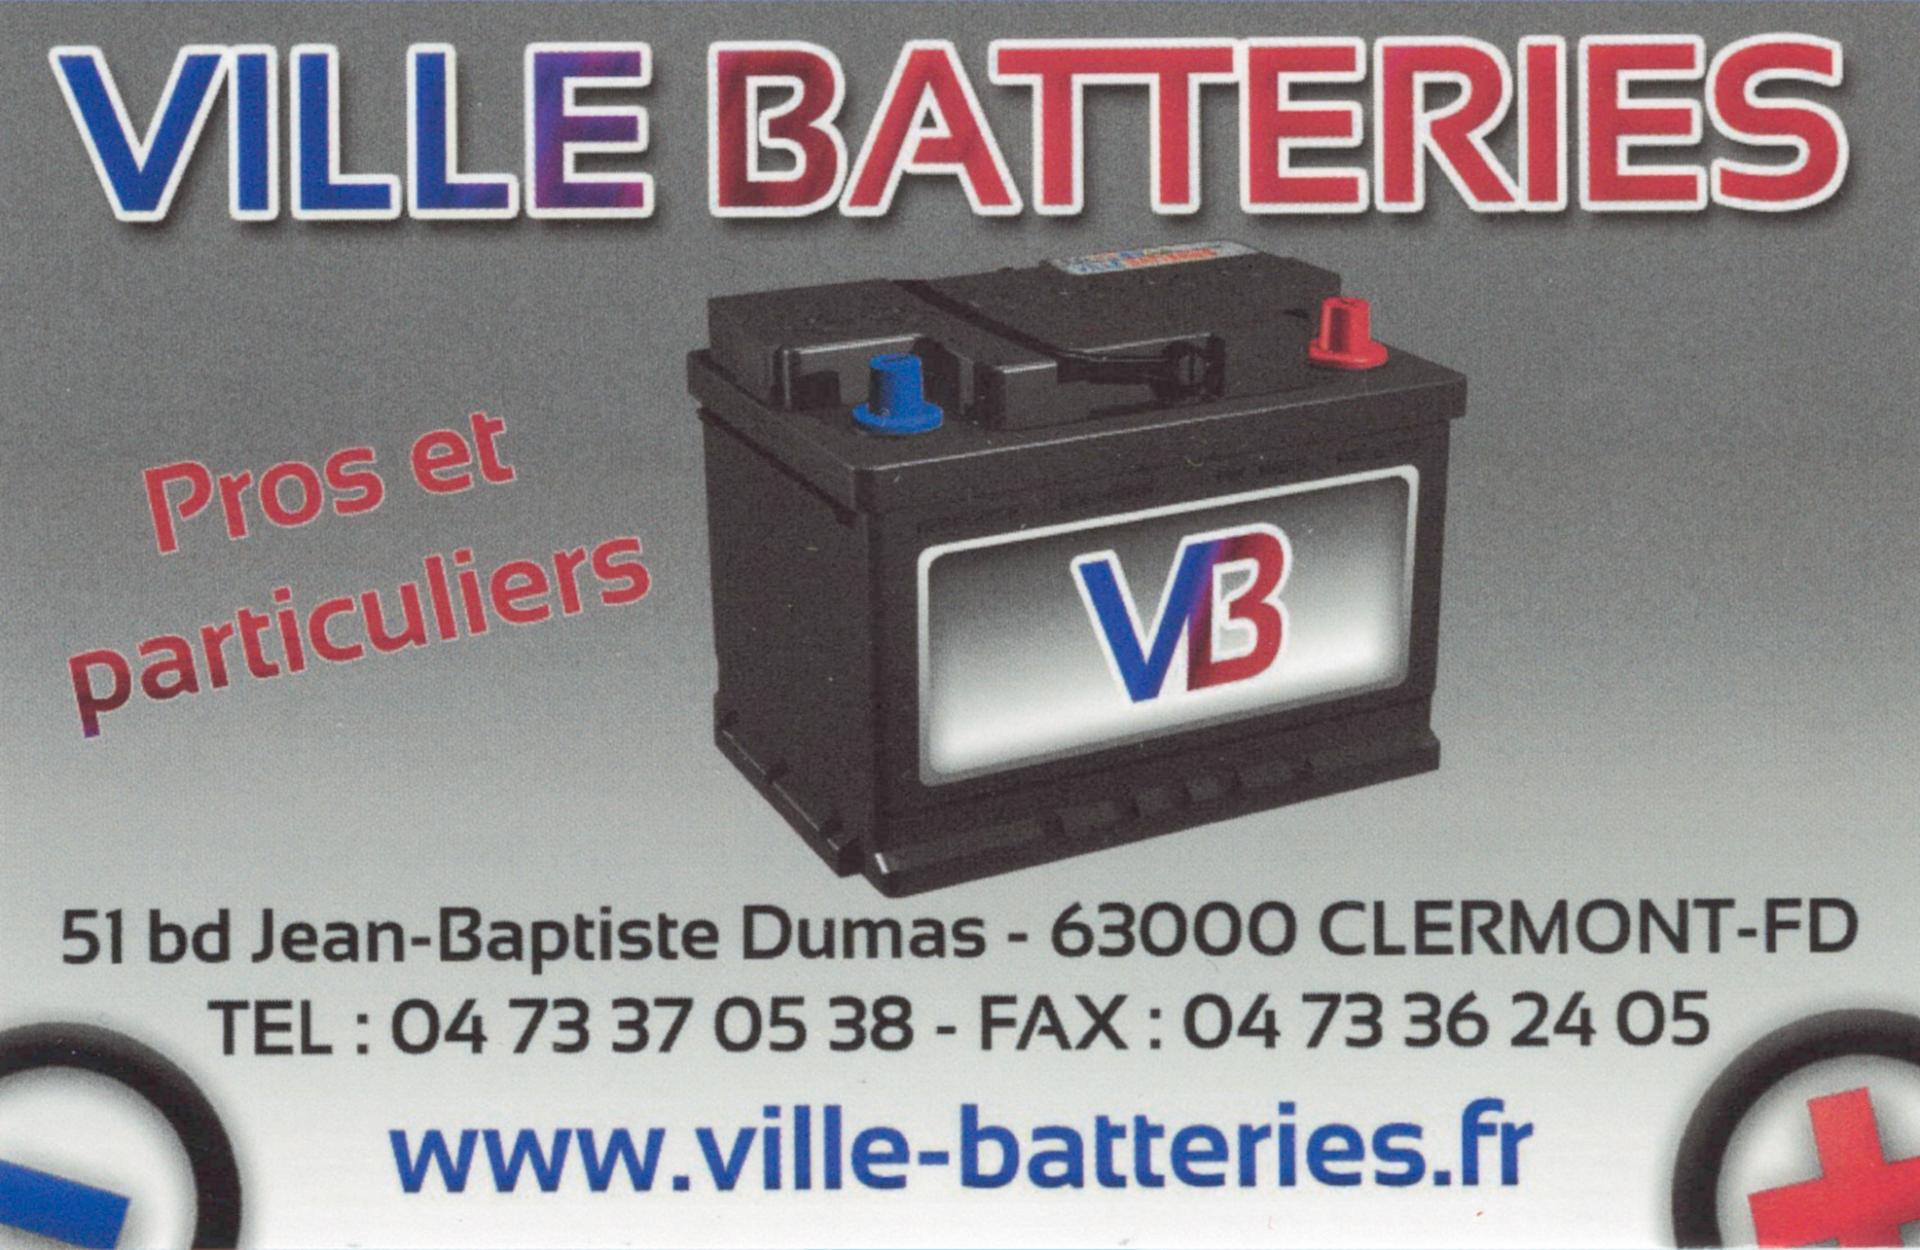 Ville batteries 2022